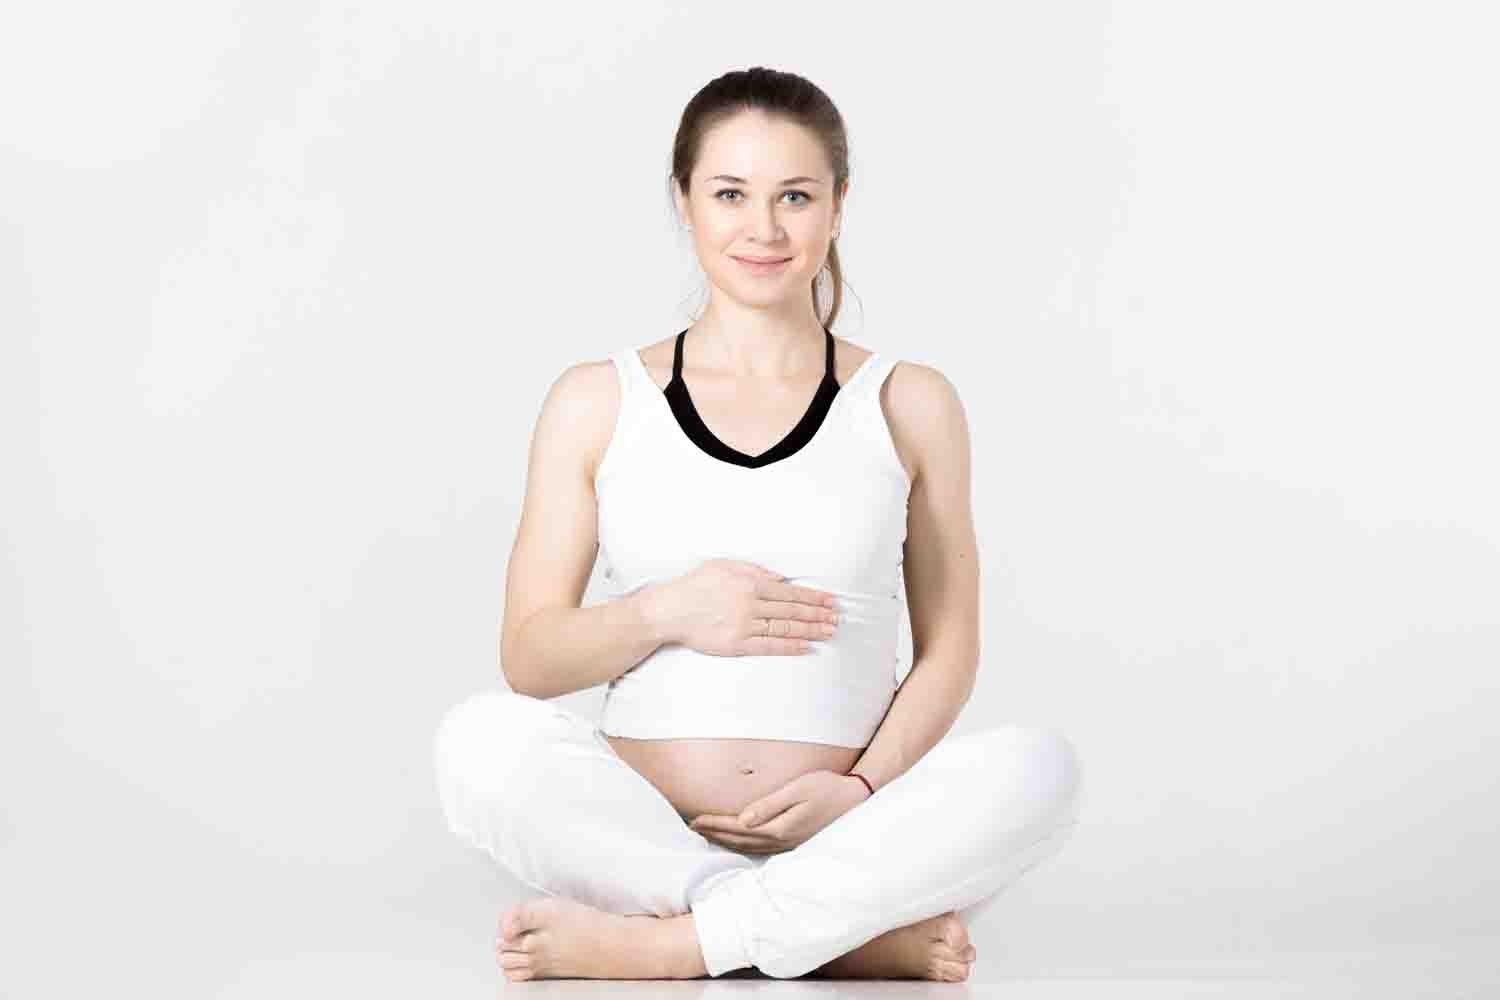 Hot Yoga While Pregnant